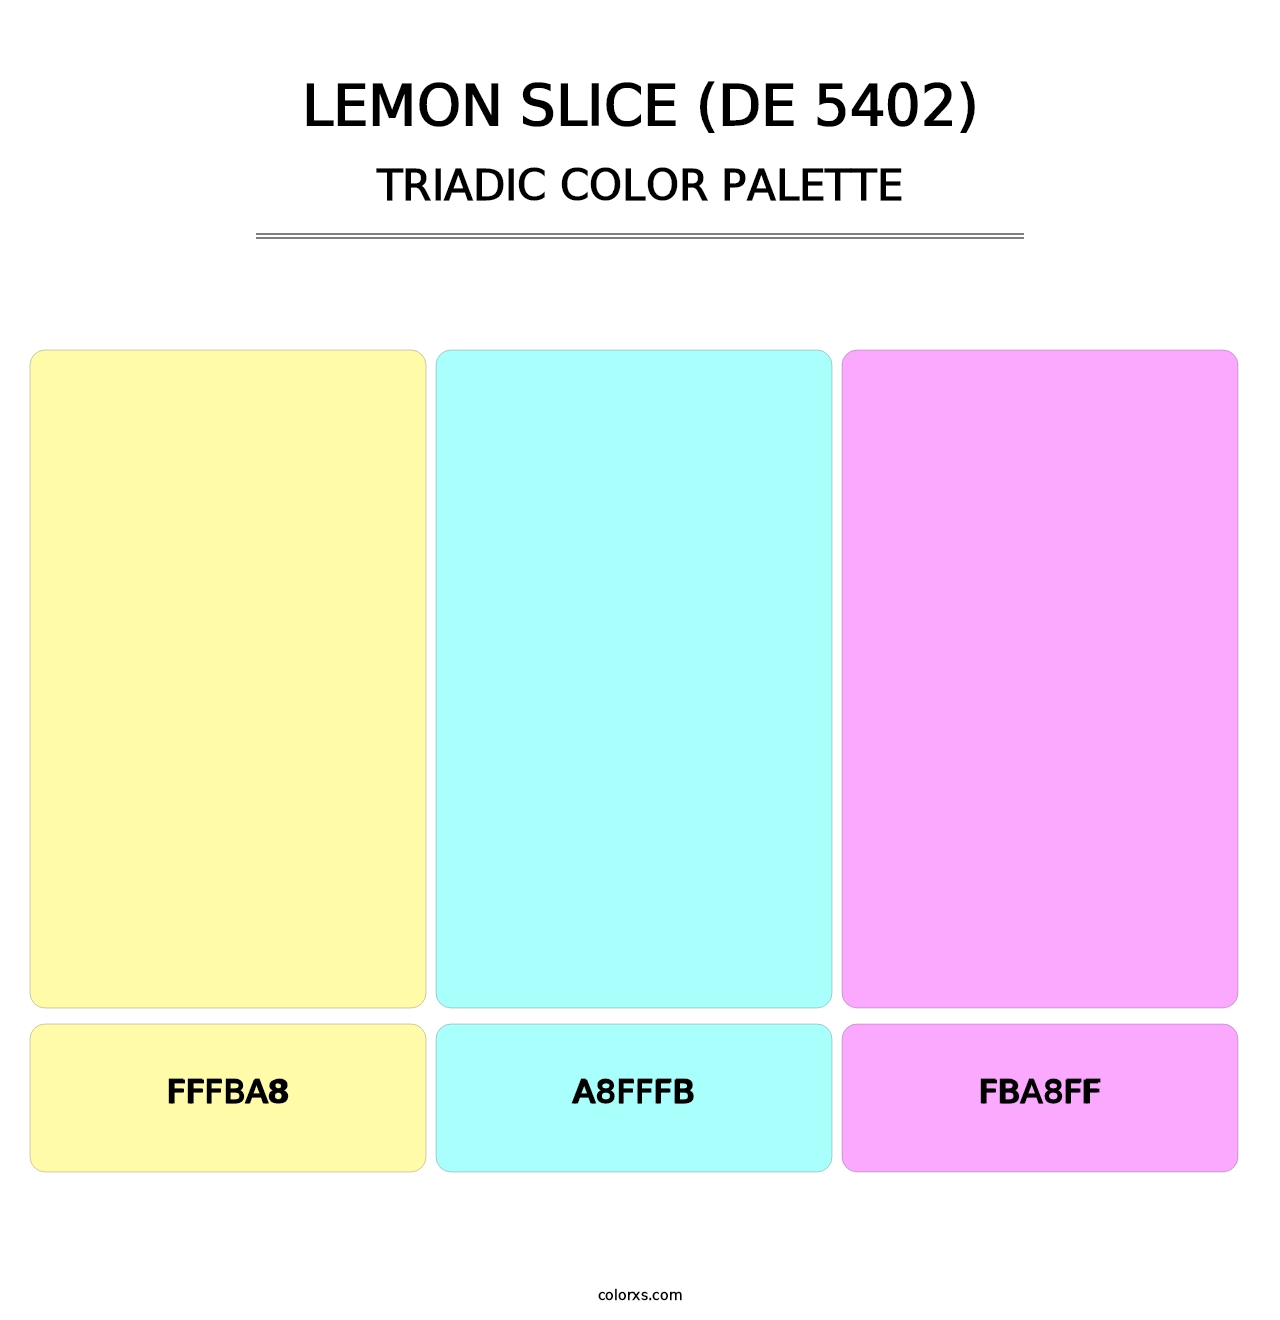 Lemon Slice (DE 5402) - Triadic Color Palette